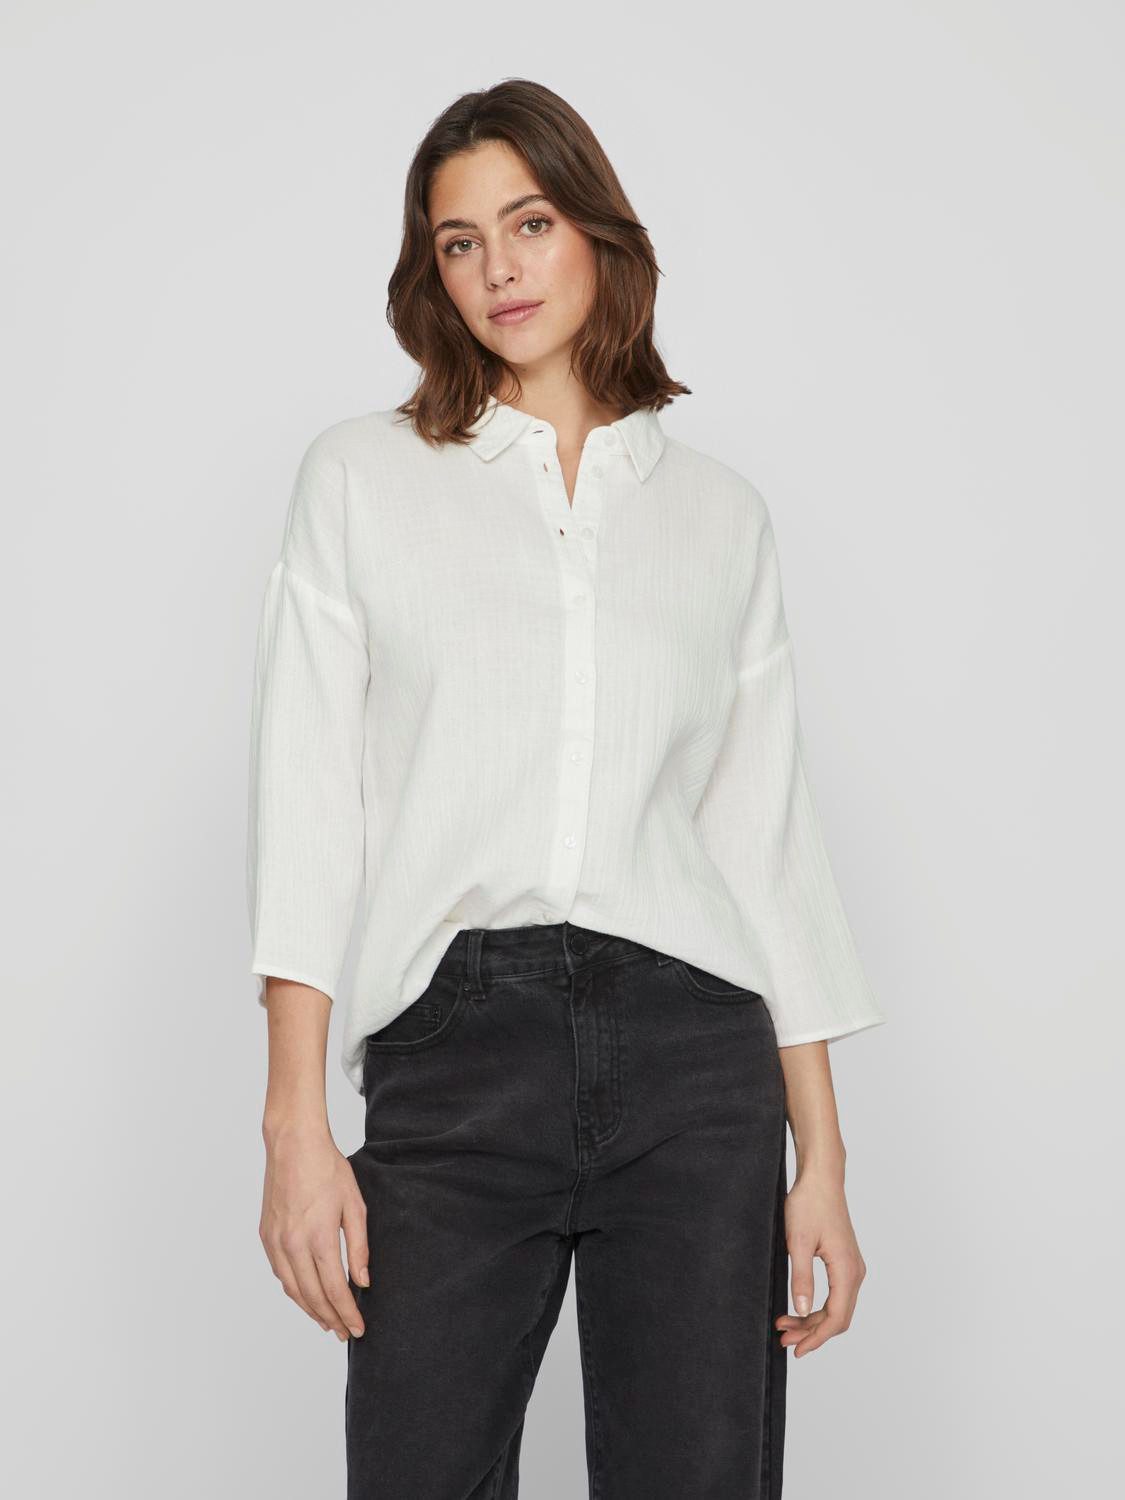 Vila Blusenshirt Lockere Crepe Design Hemd Bluse mit weiten Ärmeln 7522 in Weiß